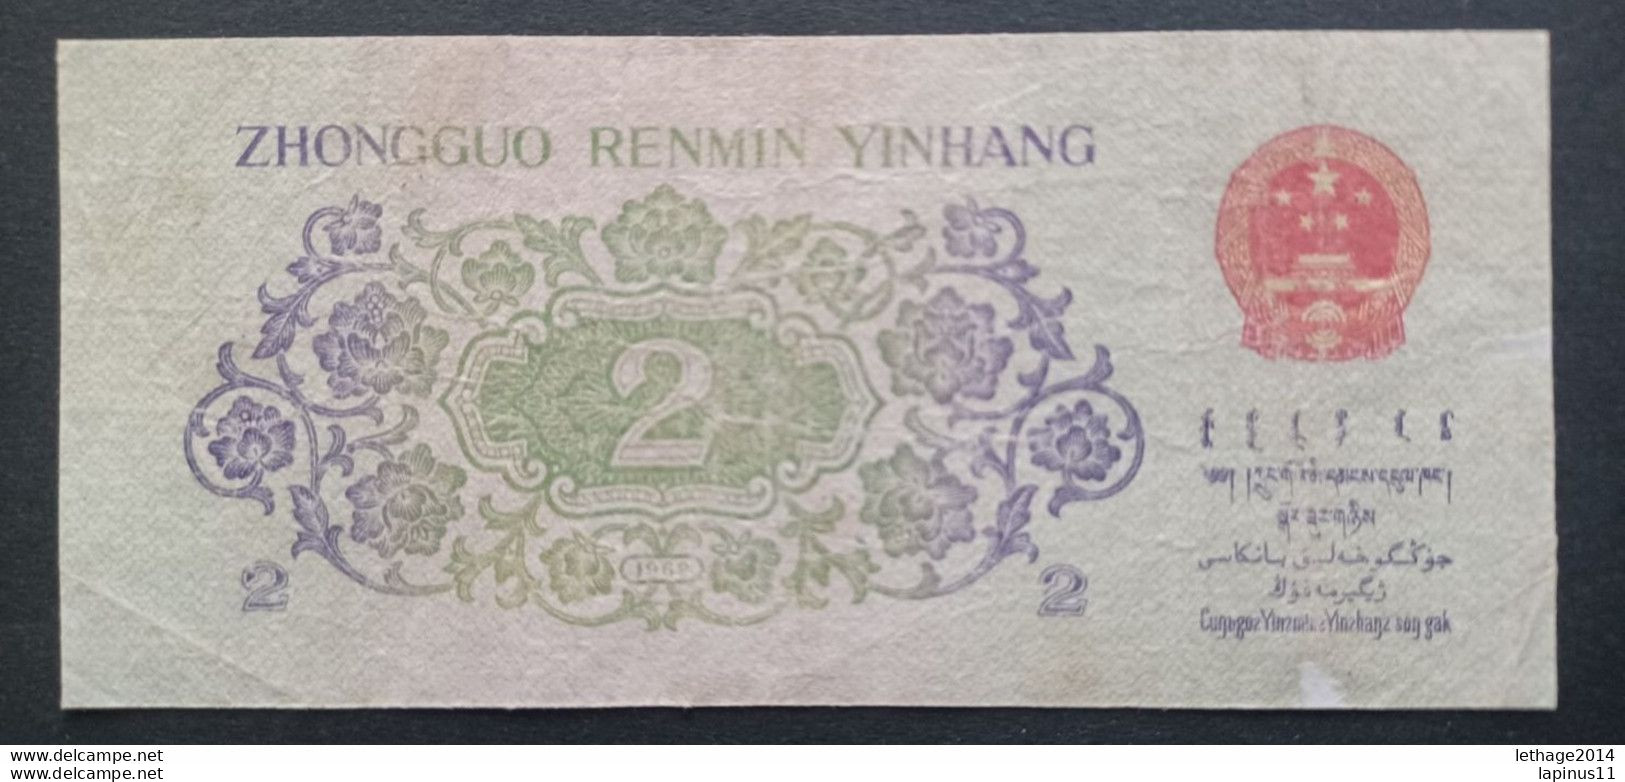 BANKNOTE CINA ZHONGGUO RENMI YINHANG 2 ER JIAO 1962 CIRCULATED - Chine